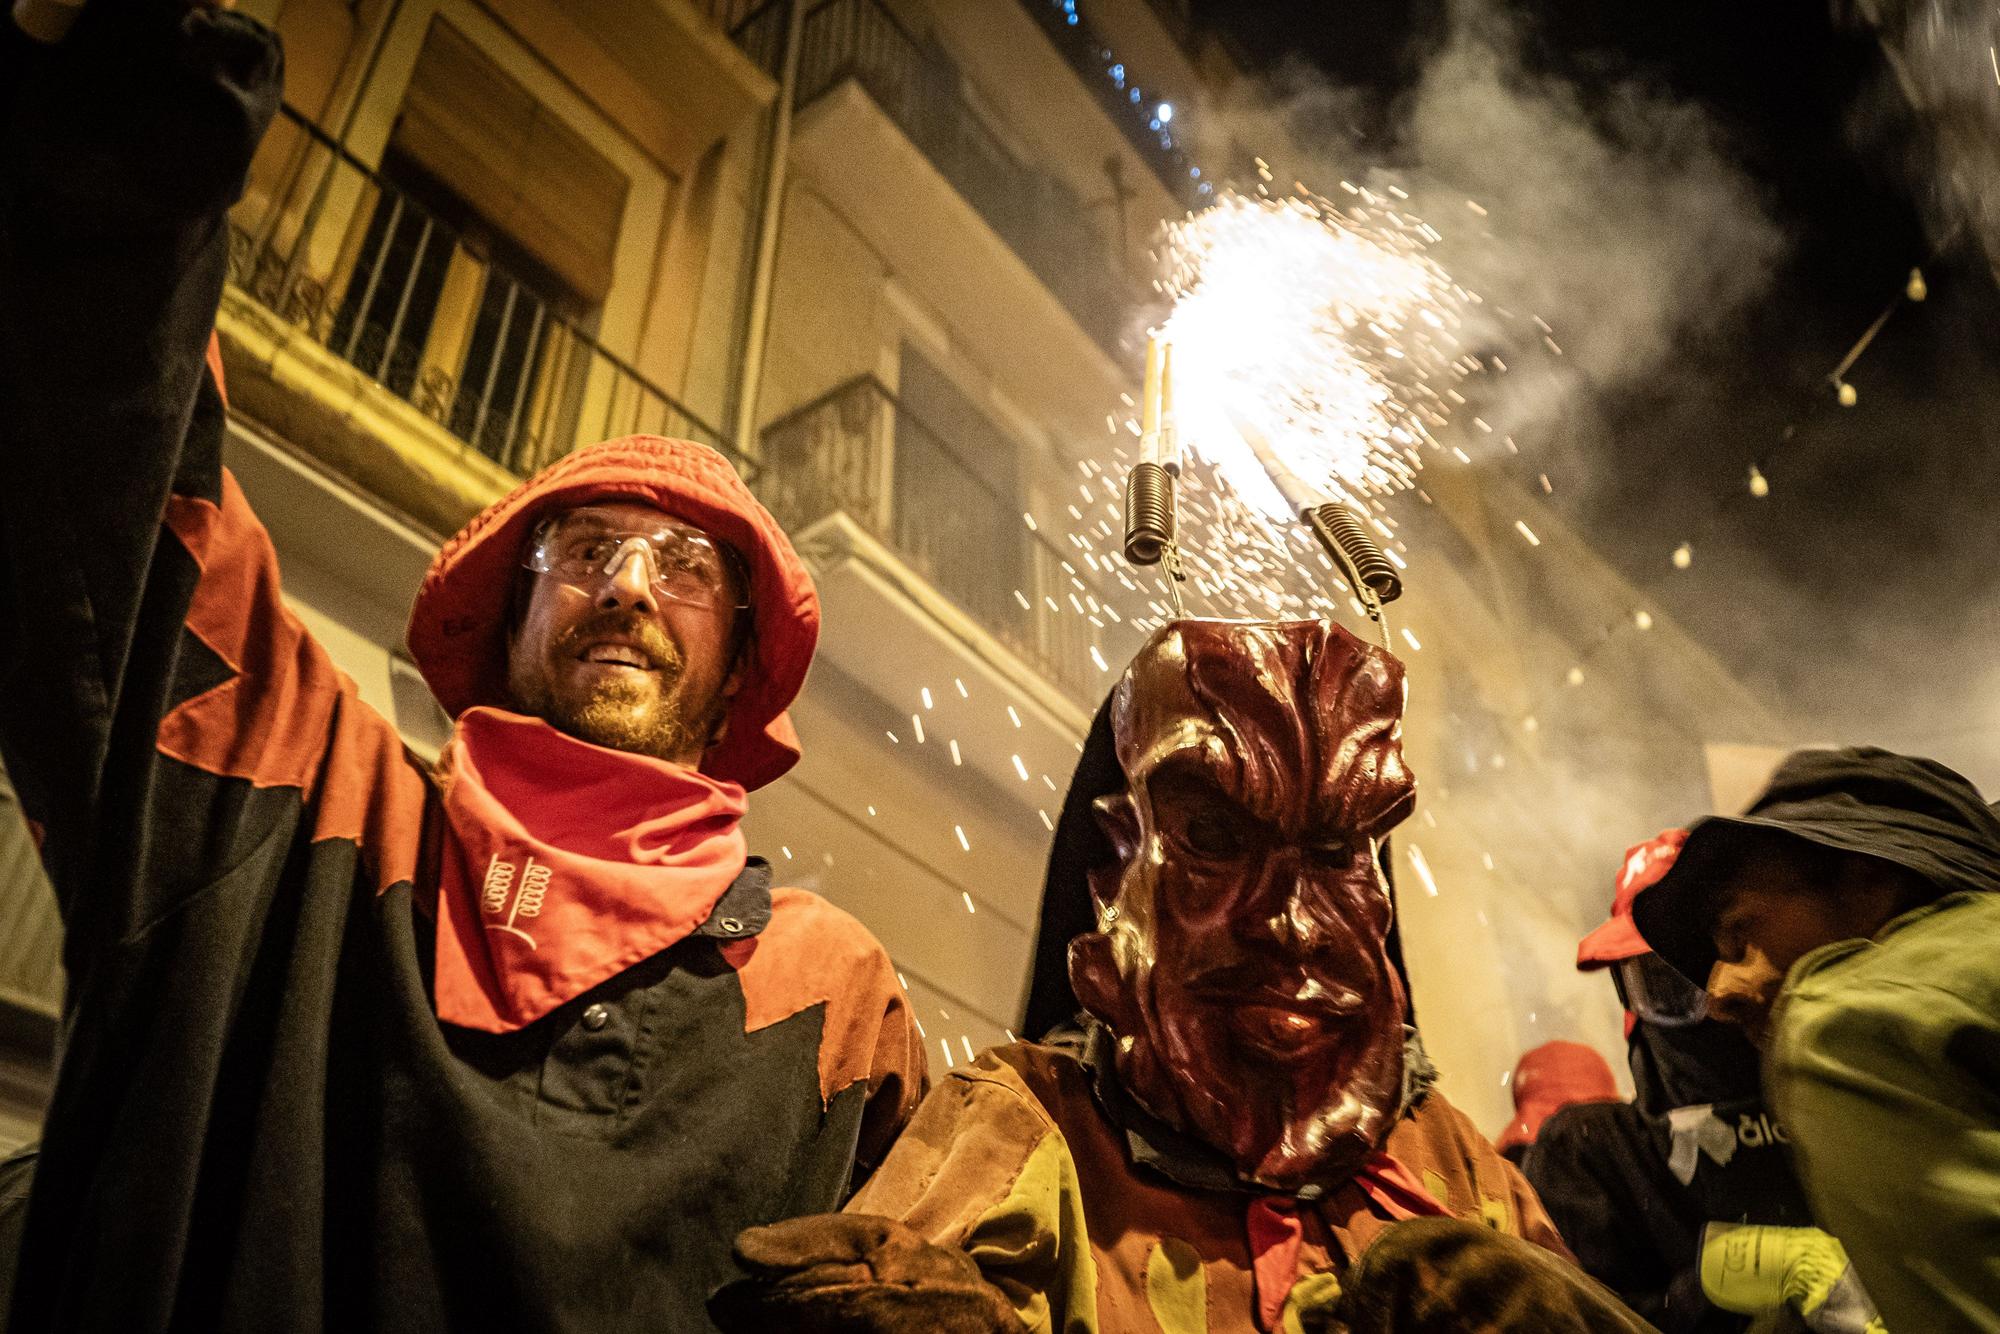 Un Correfoc multitudinari omple de pólvora i gresca el centre històric de Manresa